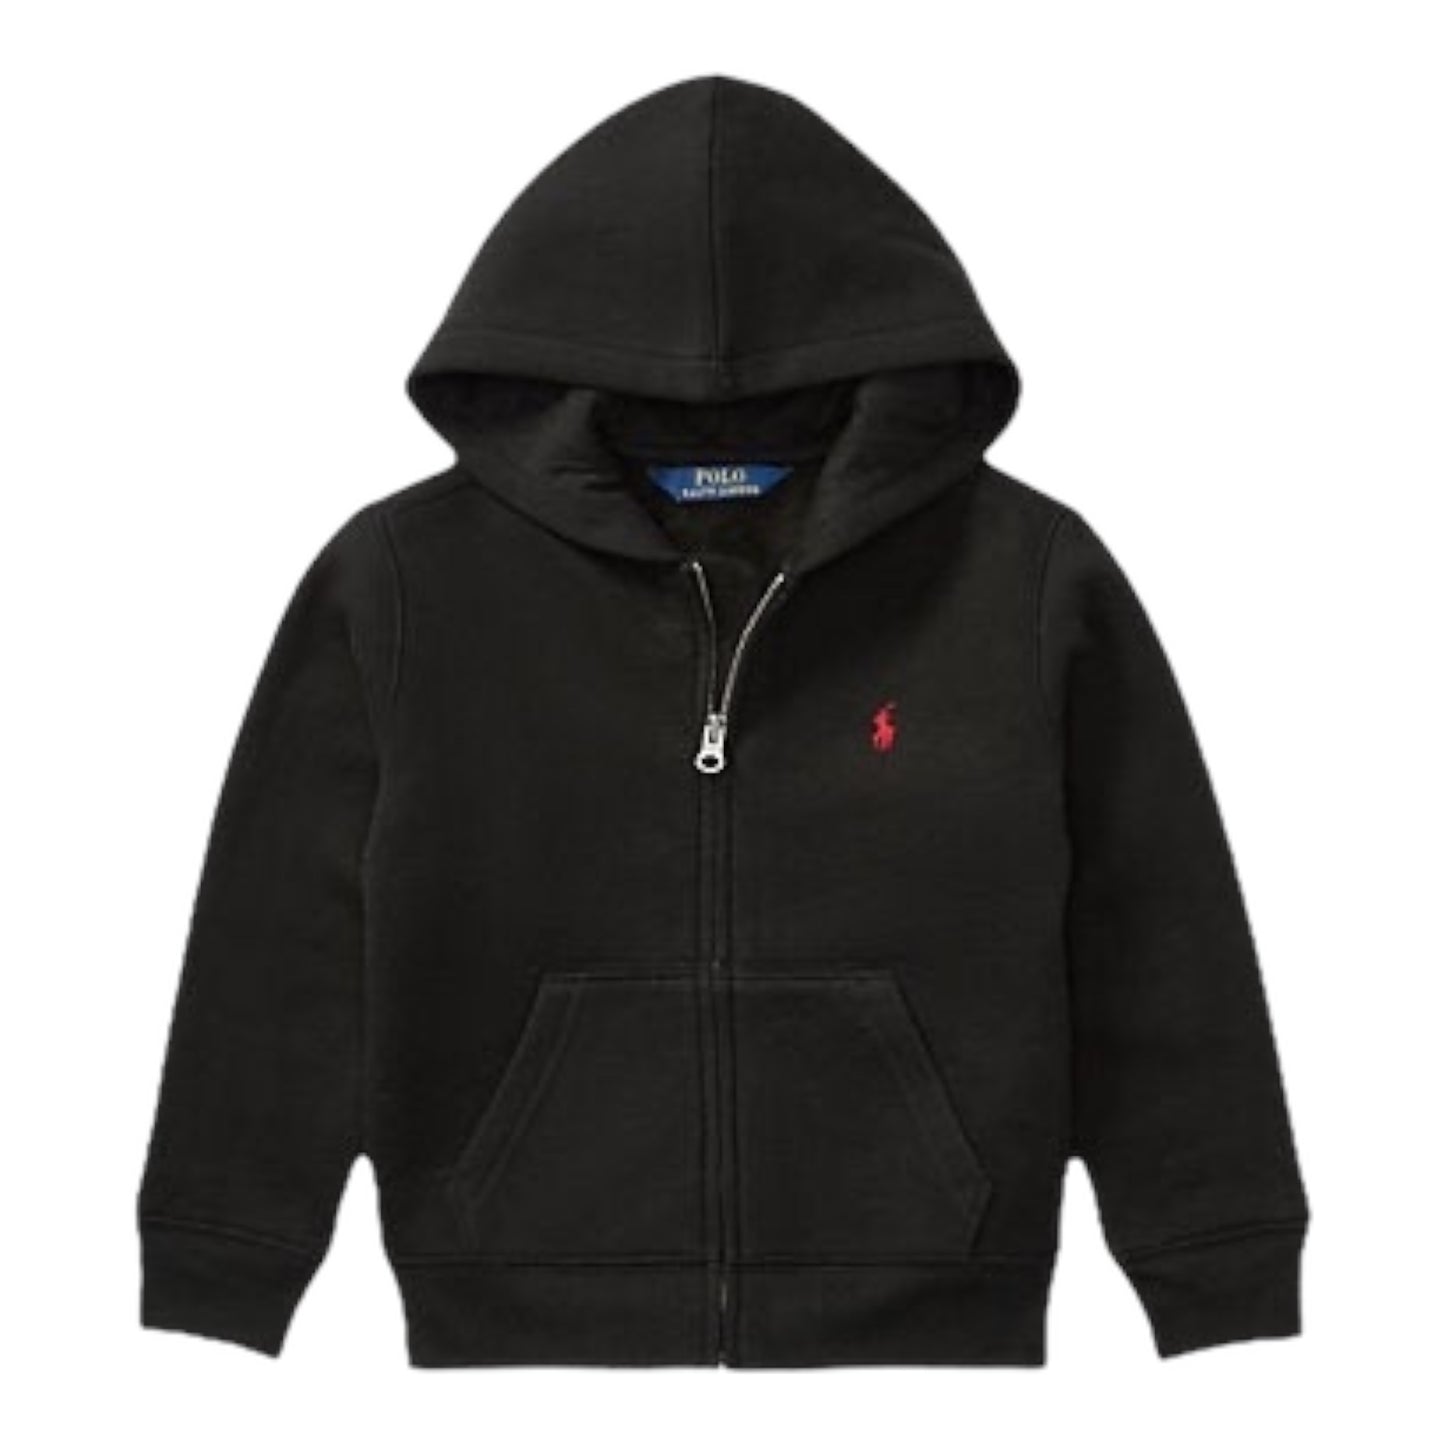 Ralph Lauren- Black zipper jacket